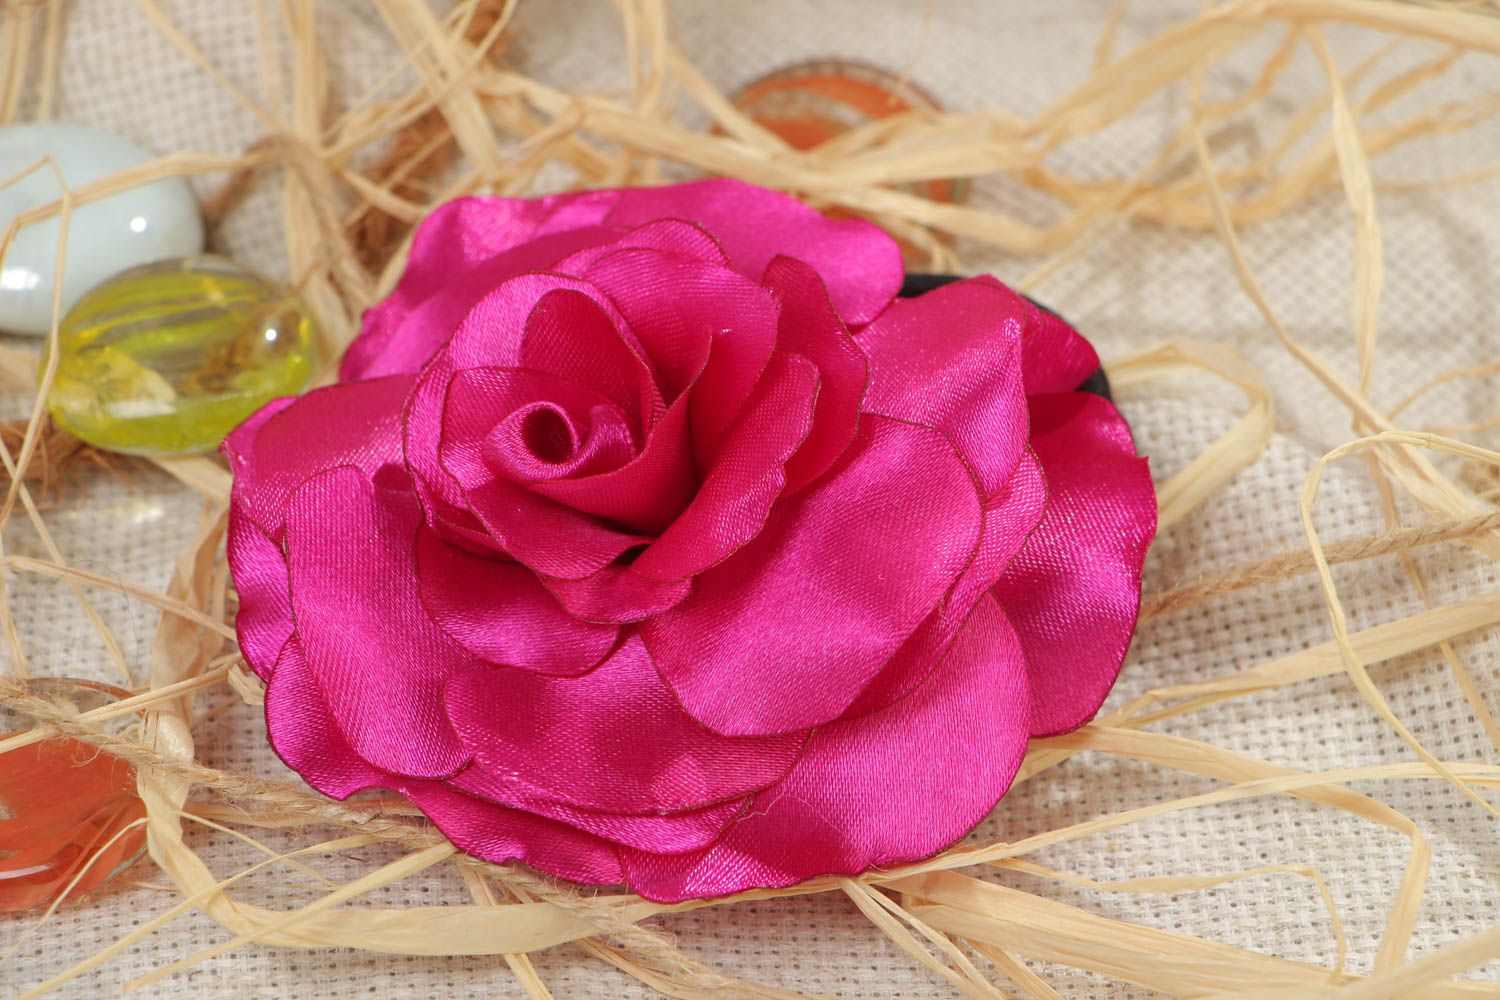 Резинка для волос с цветком большая яркая розовая красивая модная ручной работы фото 1